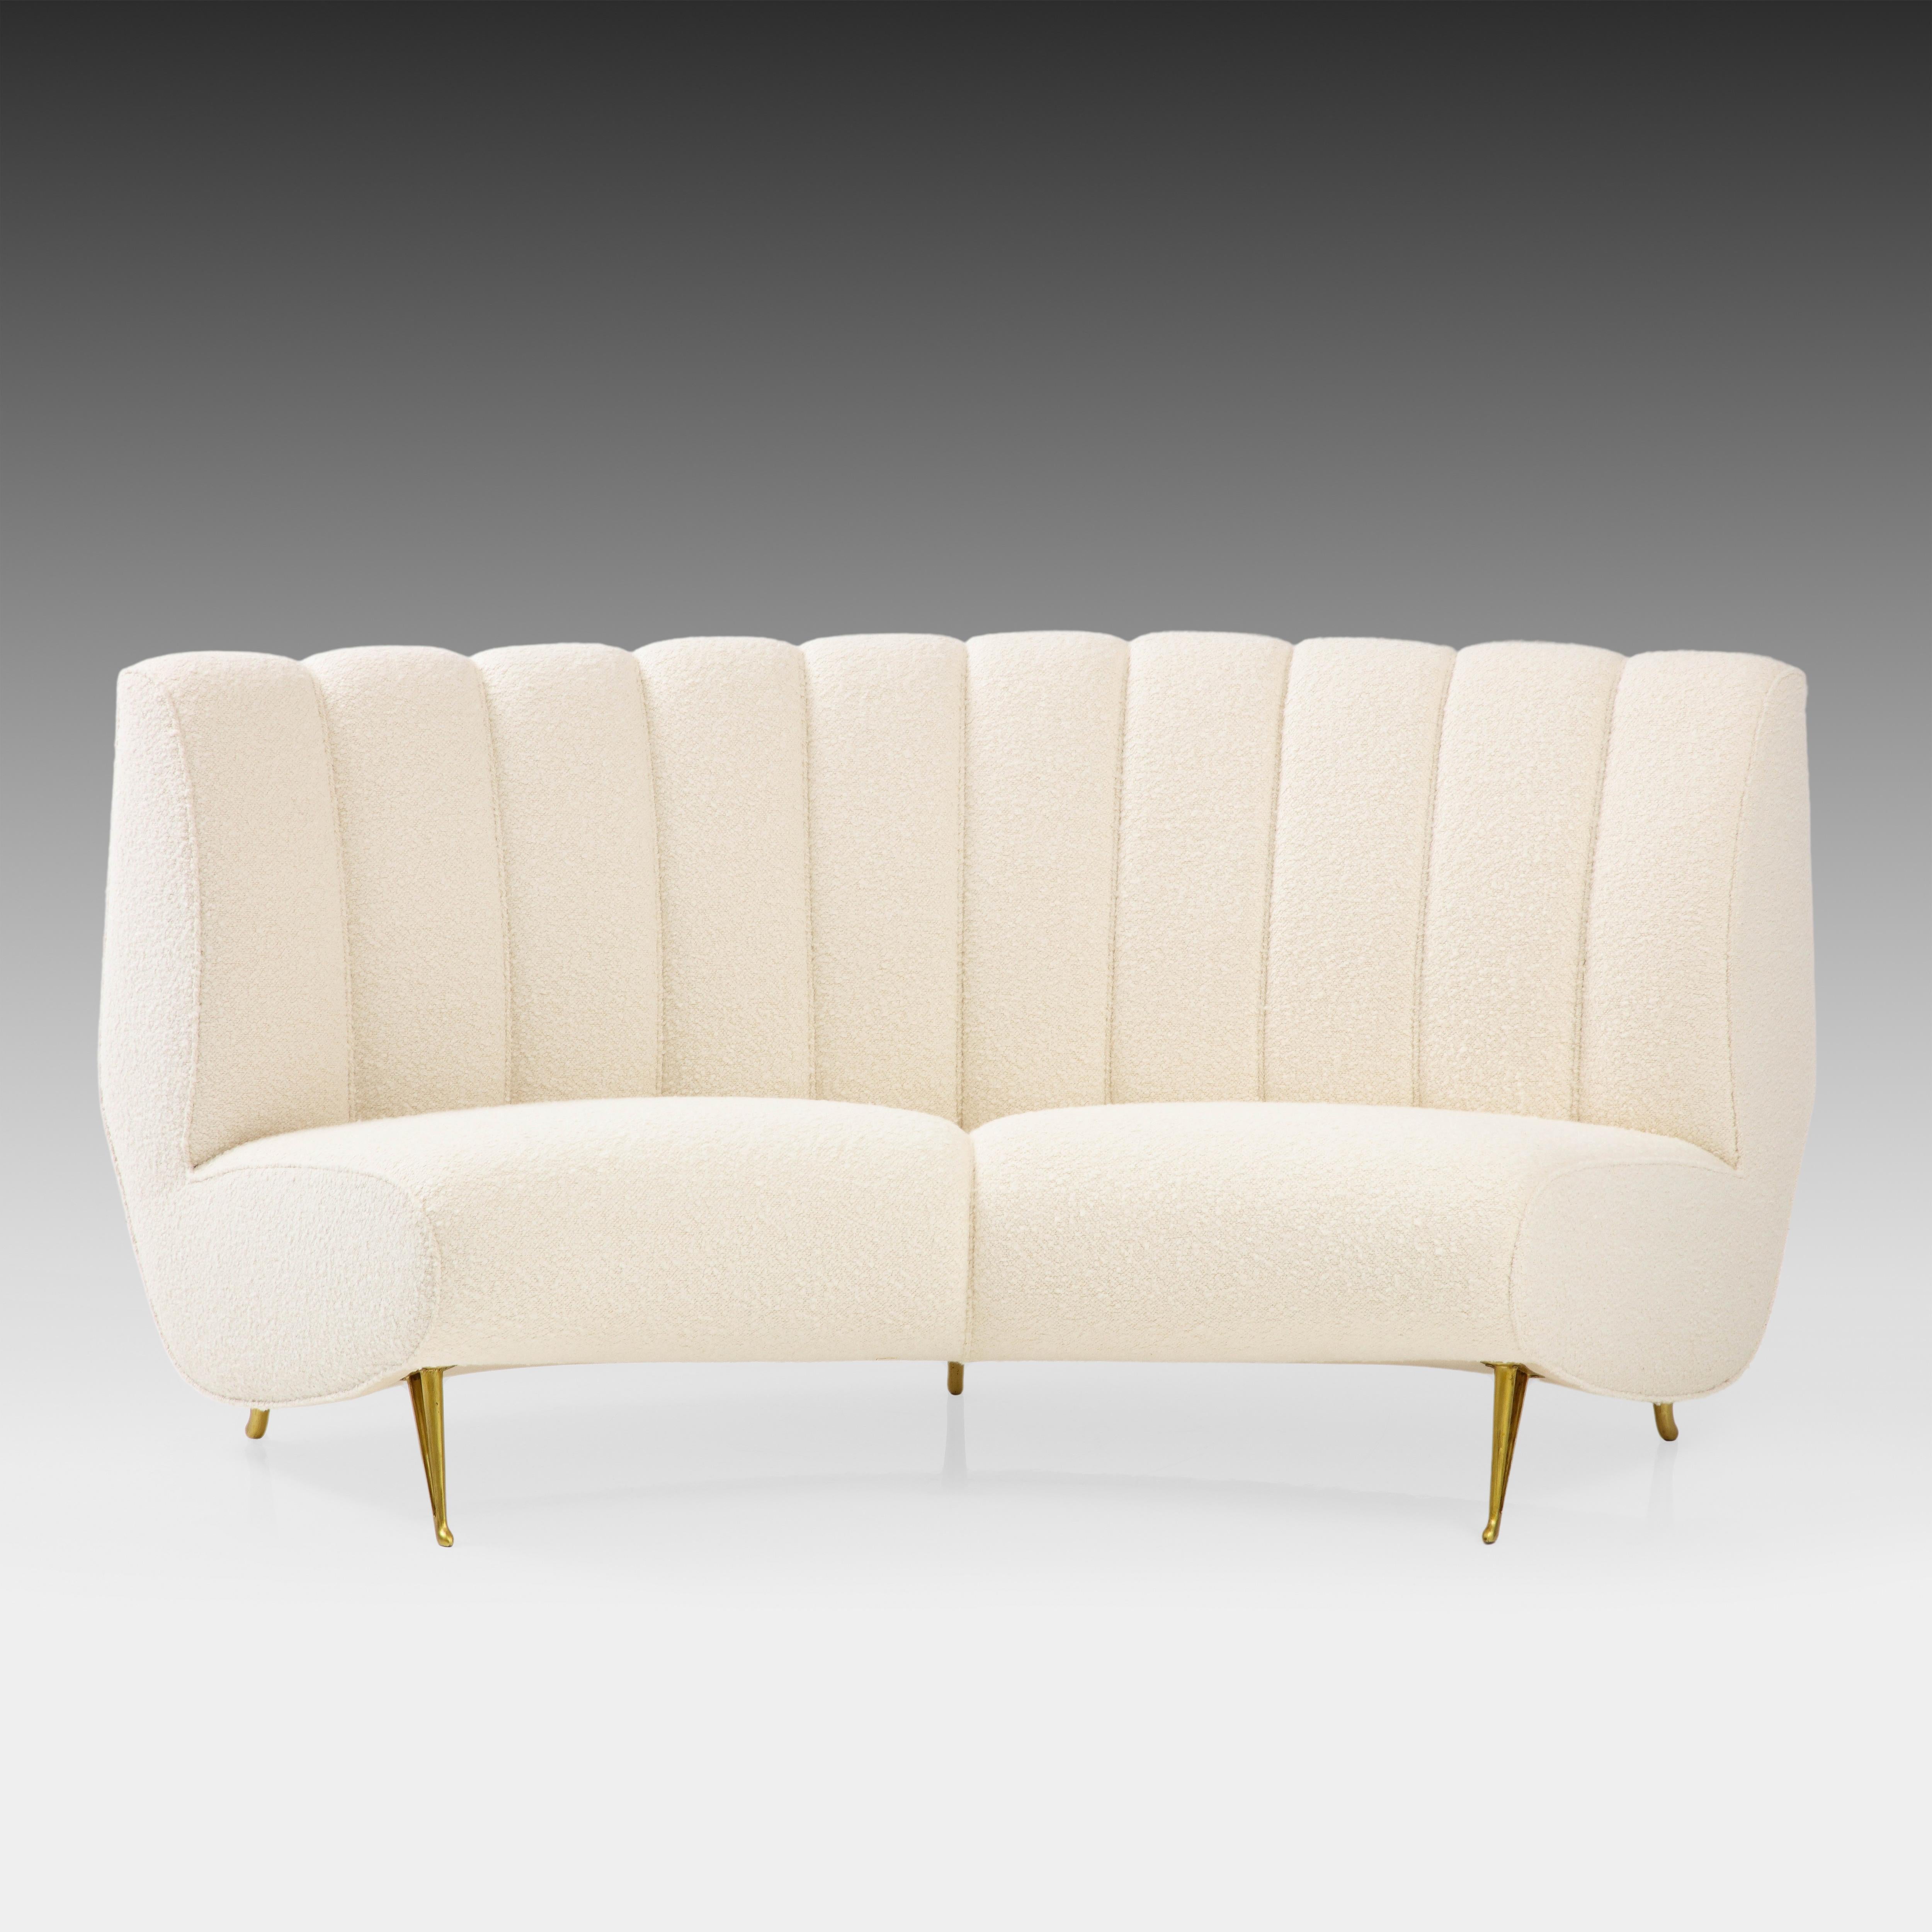 ISA Bergamo, exquisite, geschwungene Couch mit vergoldeten Metallbeinen aus elfenbeinfarbenem Bouclé, Italien, 1950er Jahre. Dieses elegante Sofa hat sanfte Kurven, einschließlich der Rückenlehne, des Sitzes und der charakteristischen vergoldeten